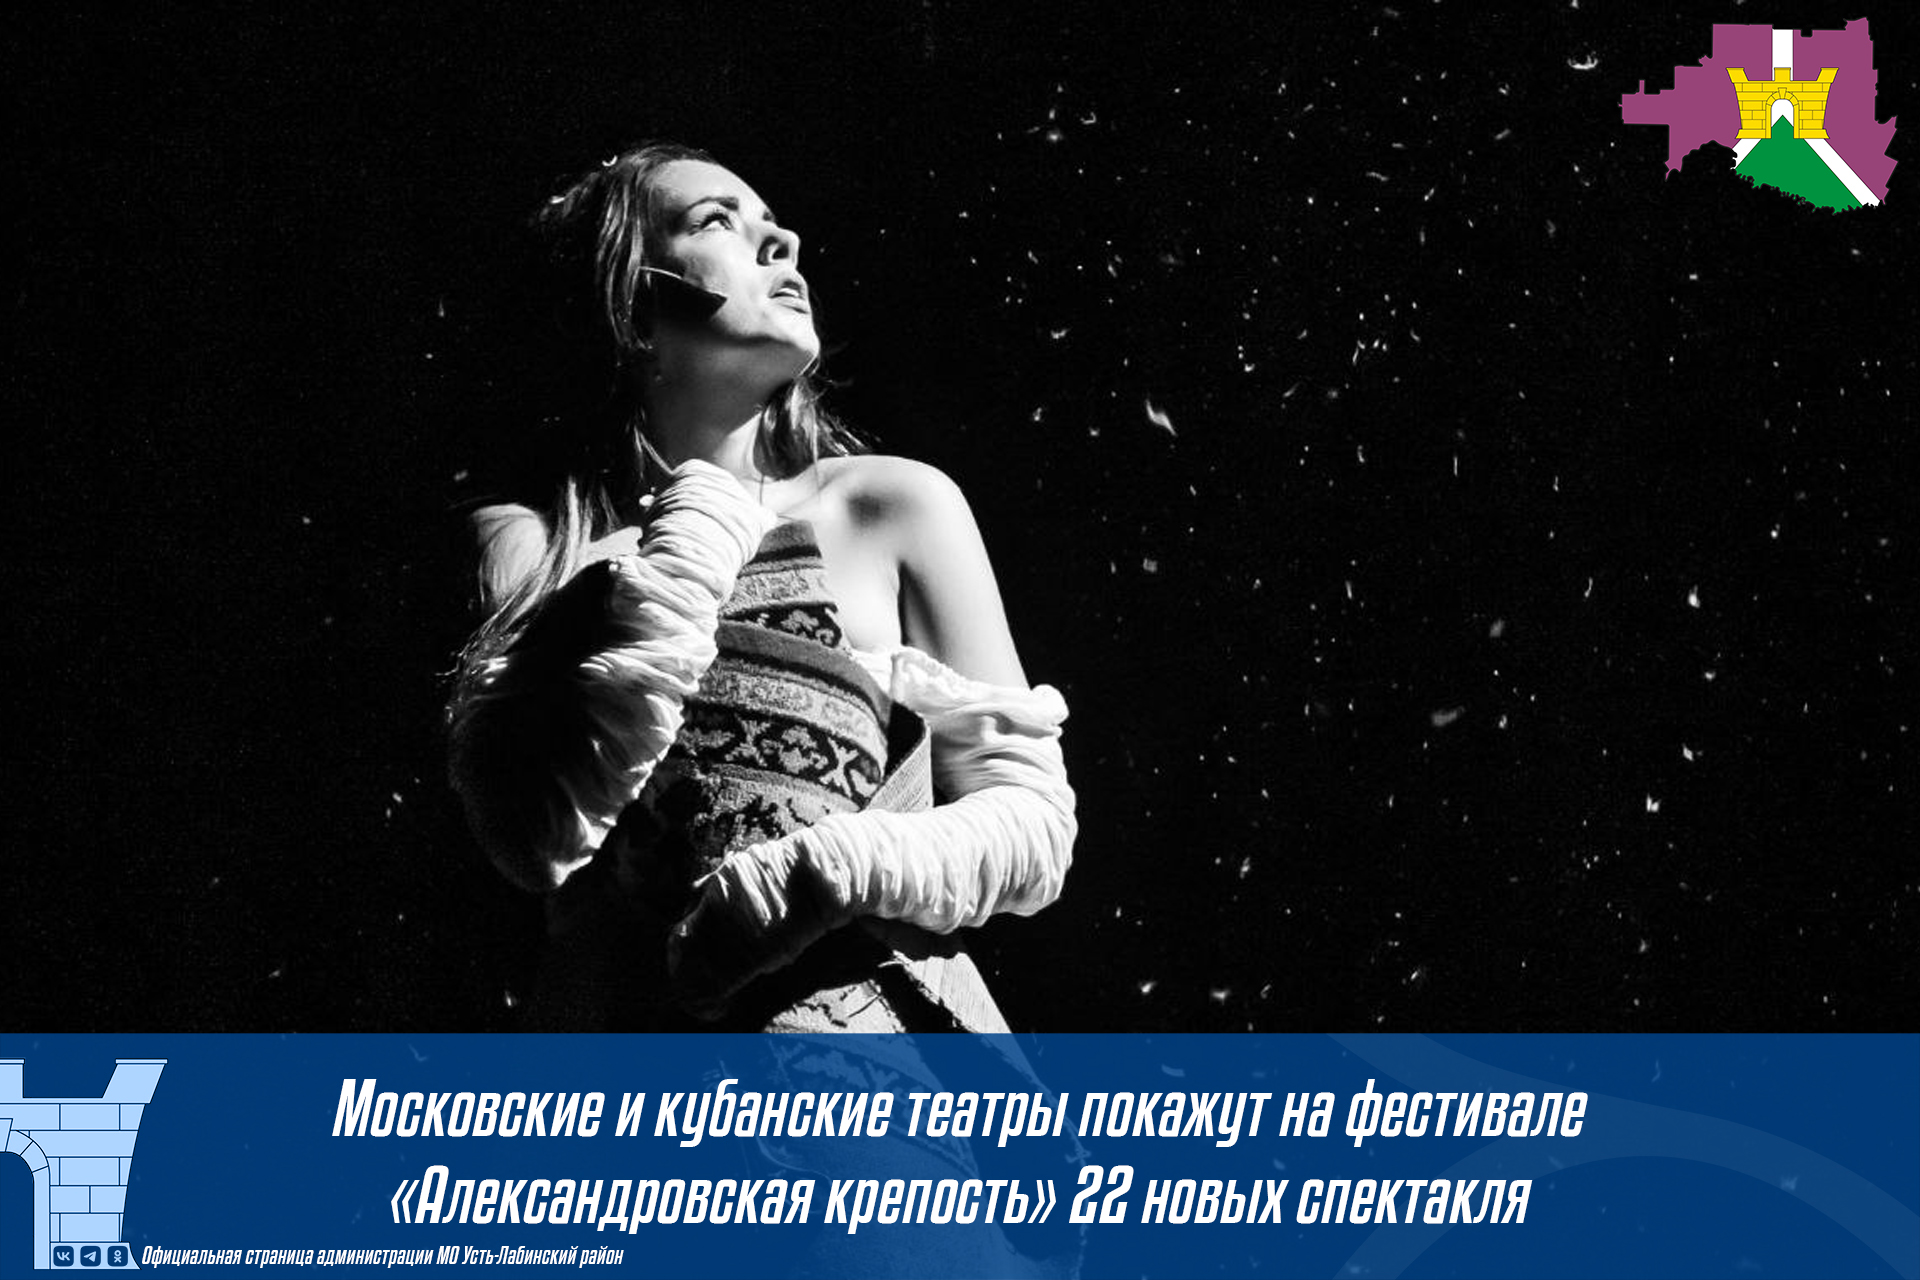 Московские и кубанские театры покажут на фестивале «Александровская крепость» 22 новых спектакля